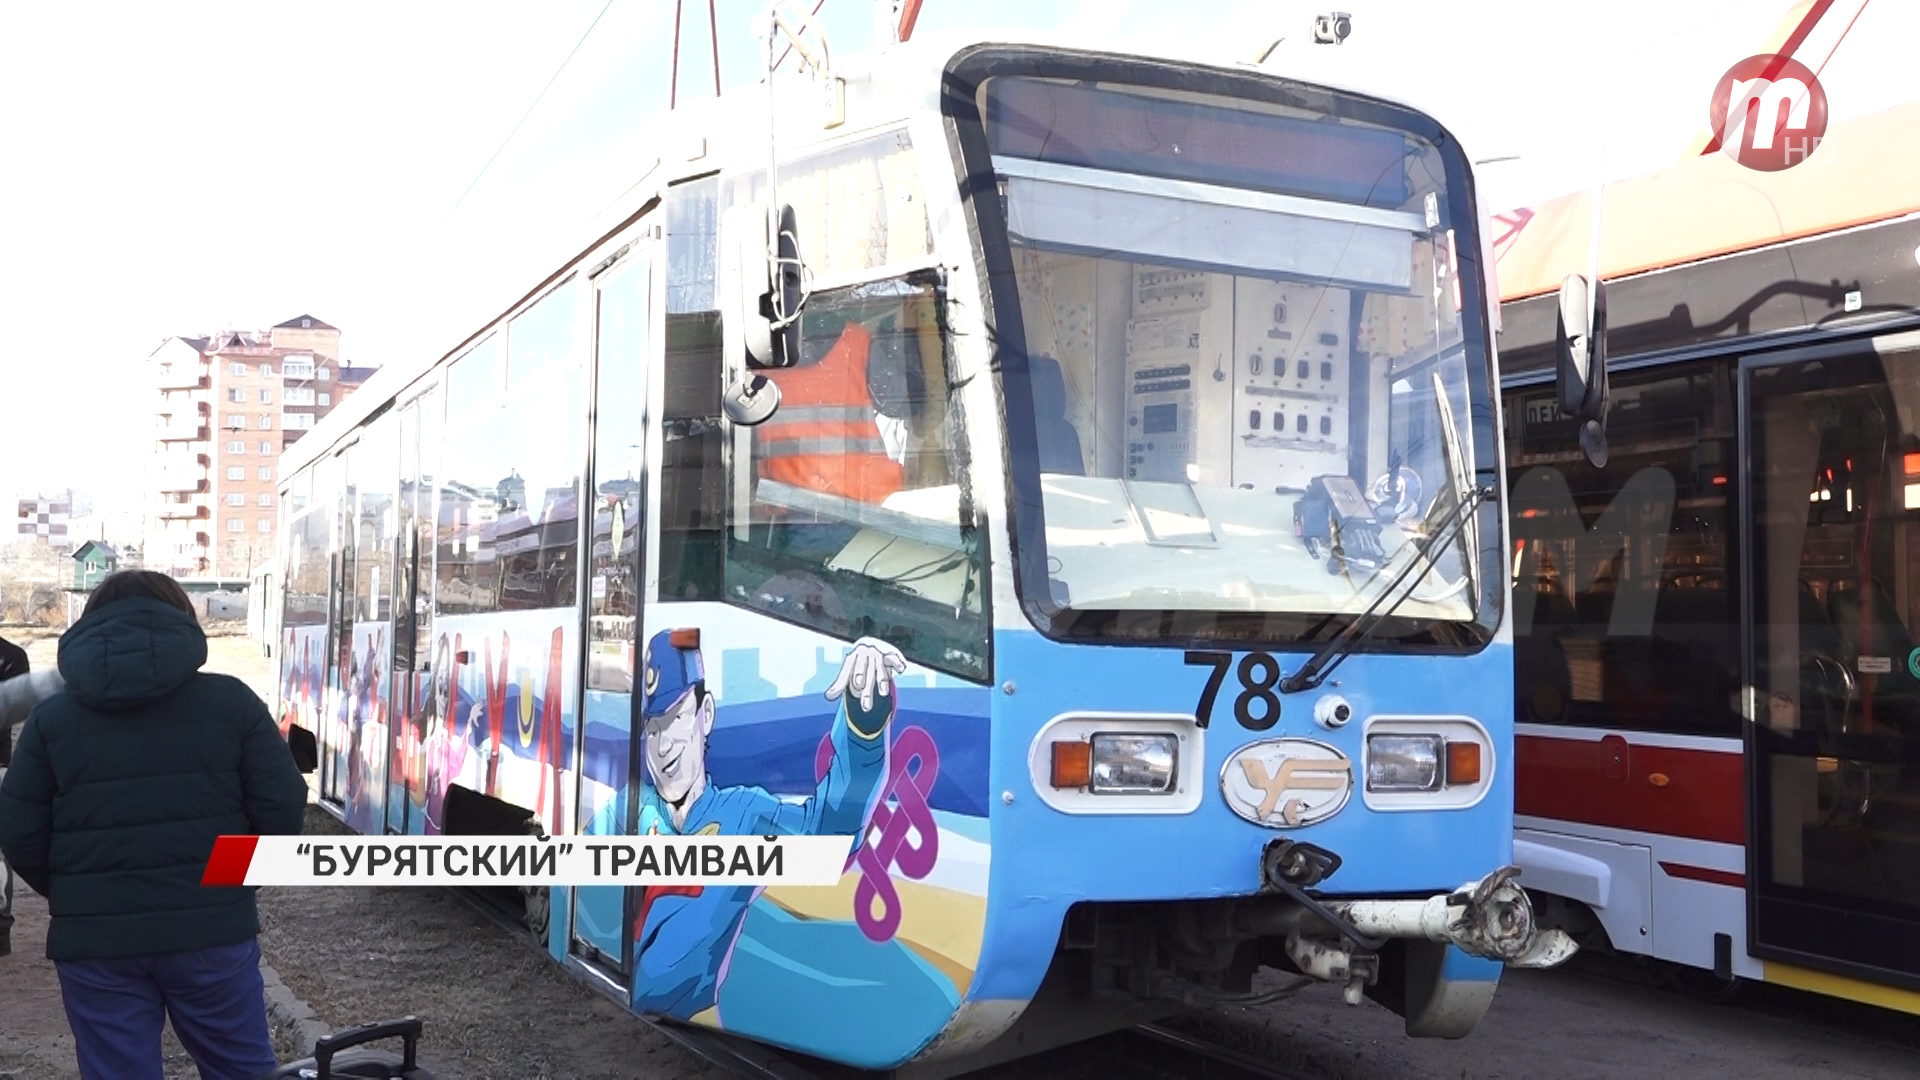 По улицам города запустили брендированный трамвай